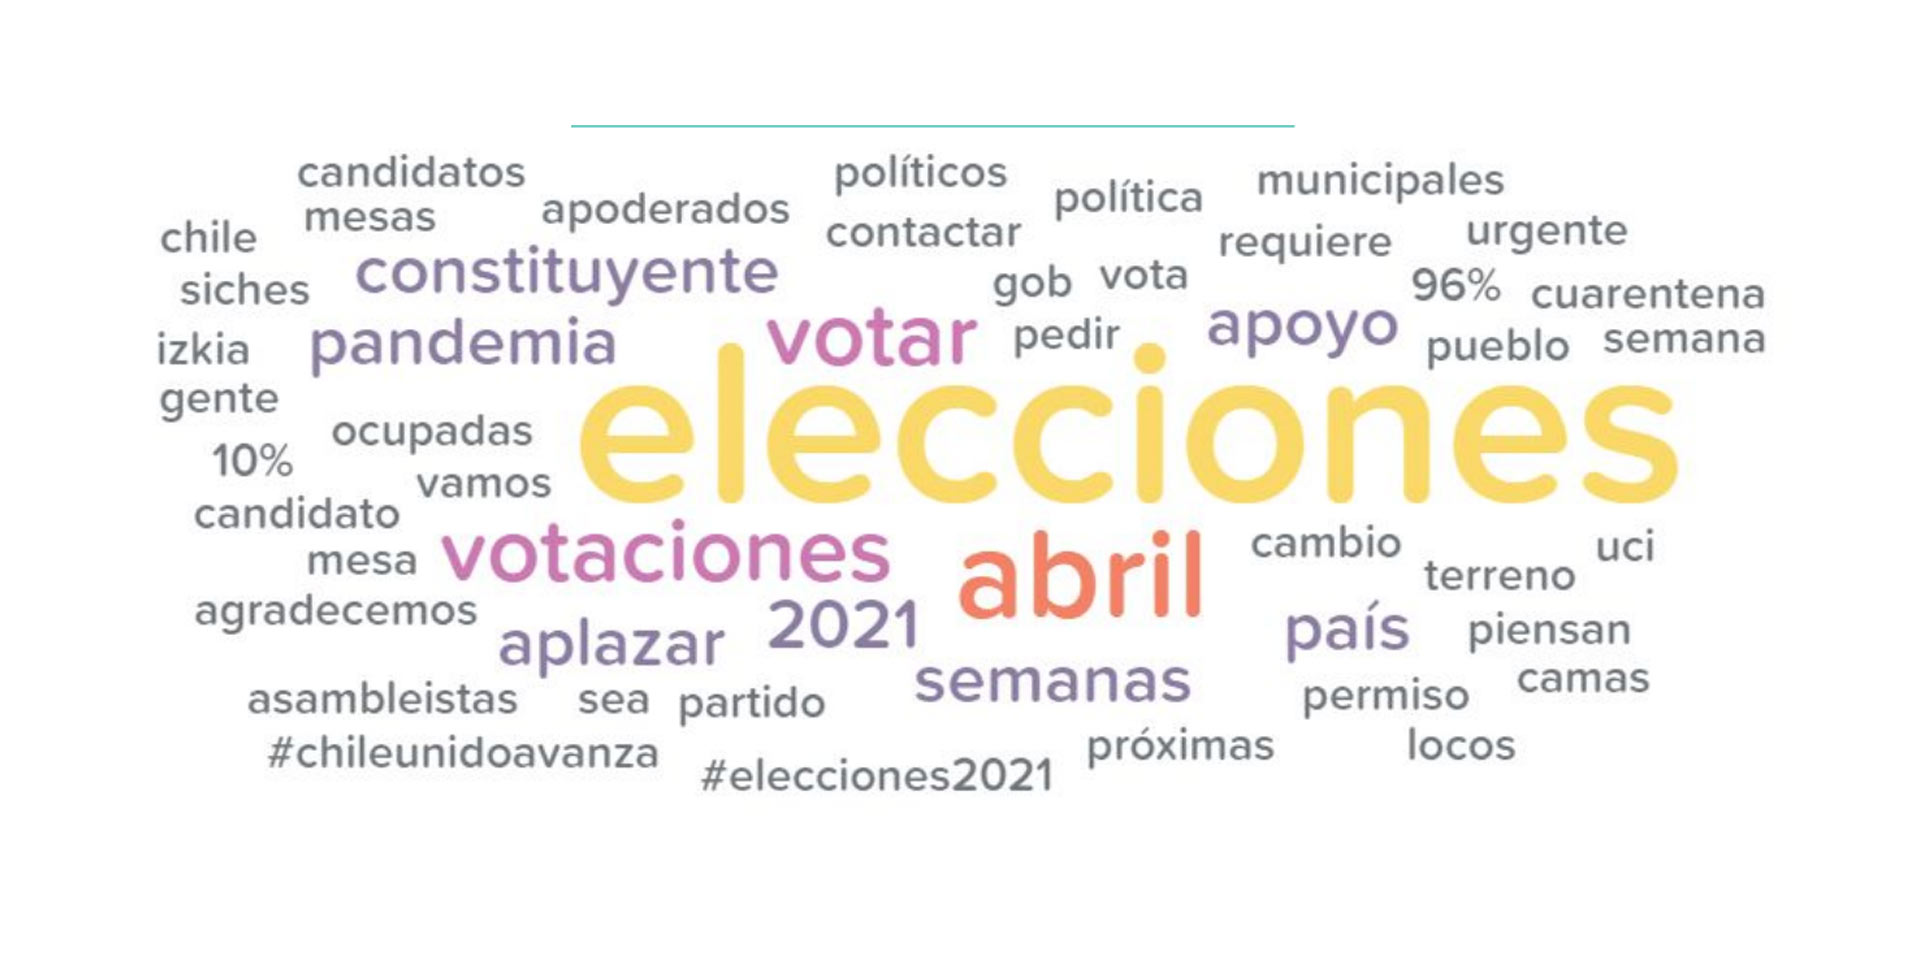 ¿Cómo es la conversación en Twitter sobre las próximas elecciones en Chile?